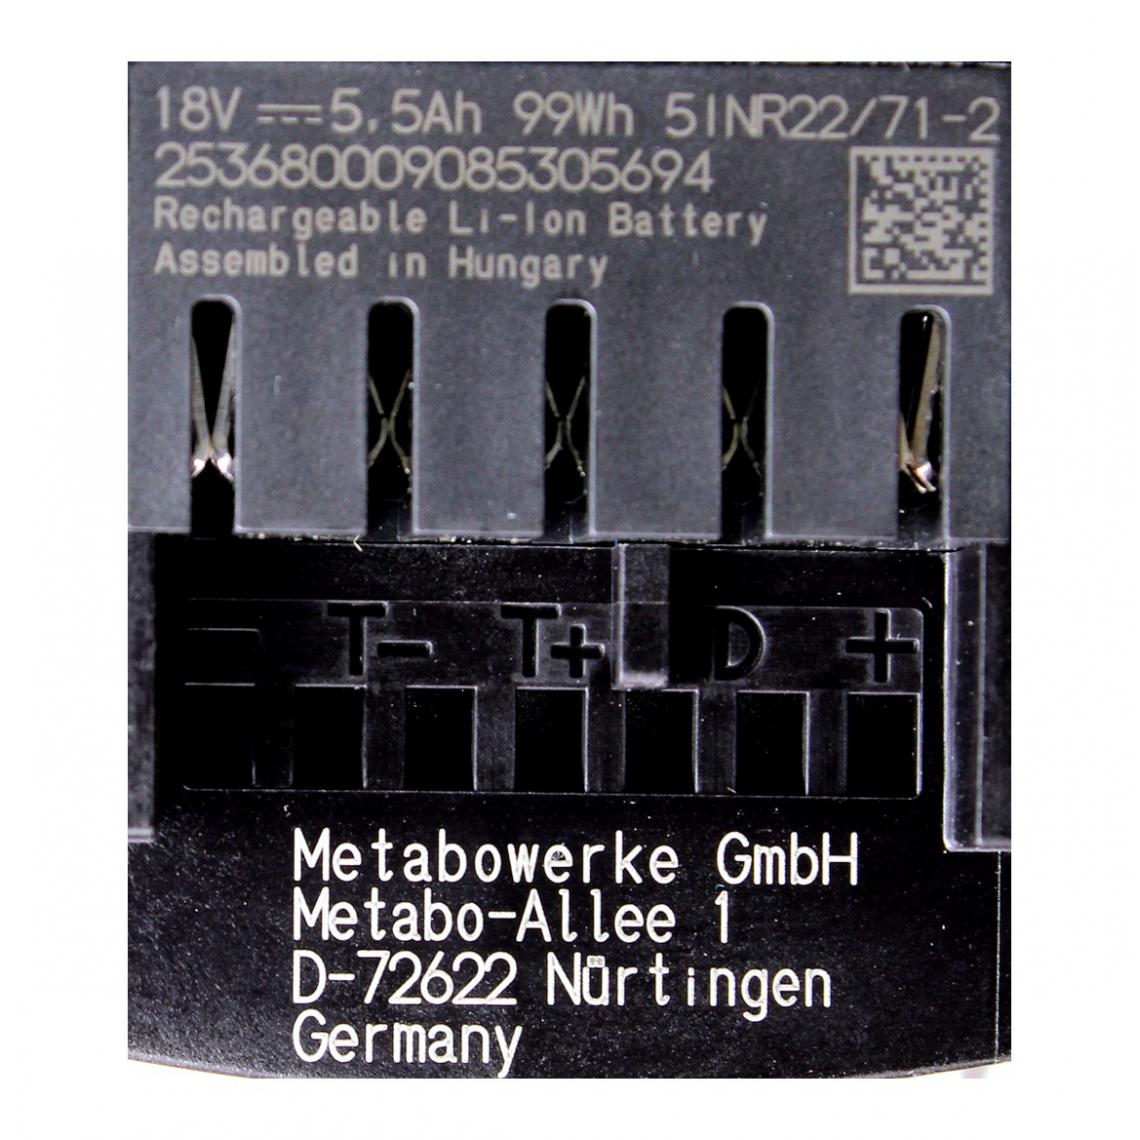 Metabo - Metabo Set 18V - 2x Batteries LiHD 5,5Ah ( 625368000 ) - Accessoires vissage, perçage